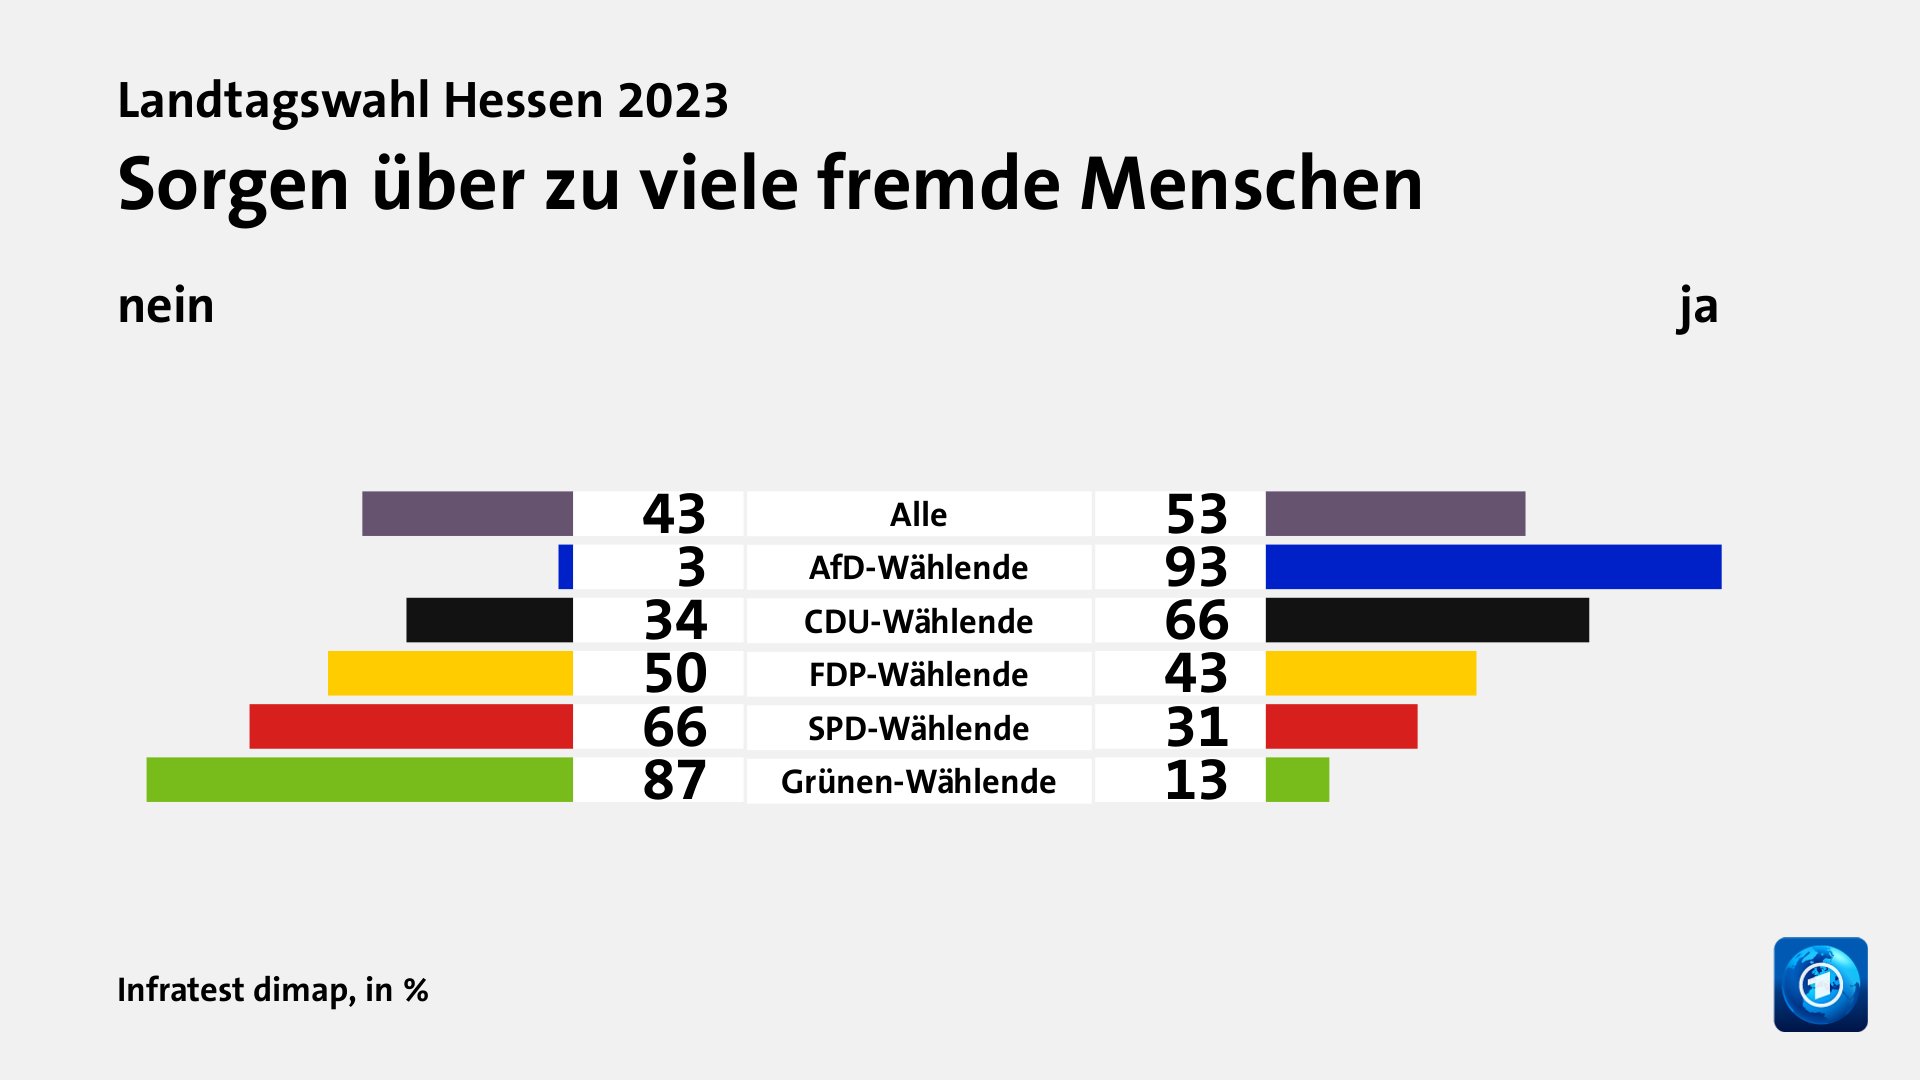 Sorgen über zu viele fremde Menschen (in %) Alle: nein 43, ja 53; AfD-Wählende: nein 3, ja 93; CDU-Wählende: nein 34, ja 66; FDP-Wählende: nein 50, ja 43; SPD-Wählende: nein 66, ja 31; Grünen-Wählende: nein 87, ja 13; Quelle: Infratest dimap